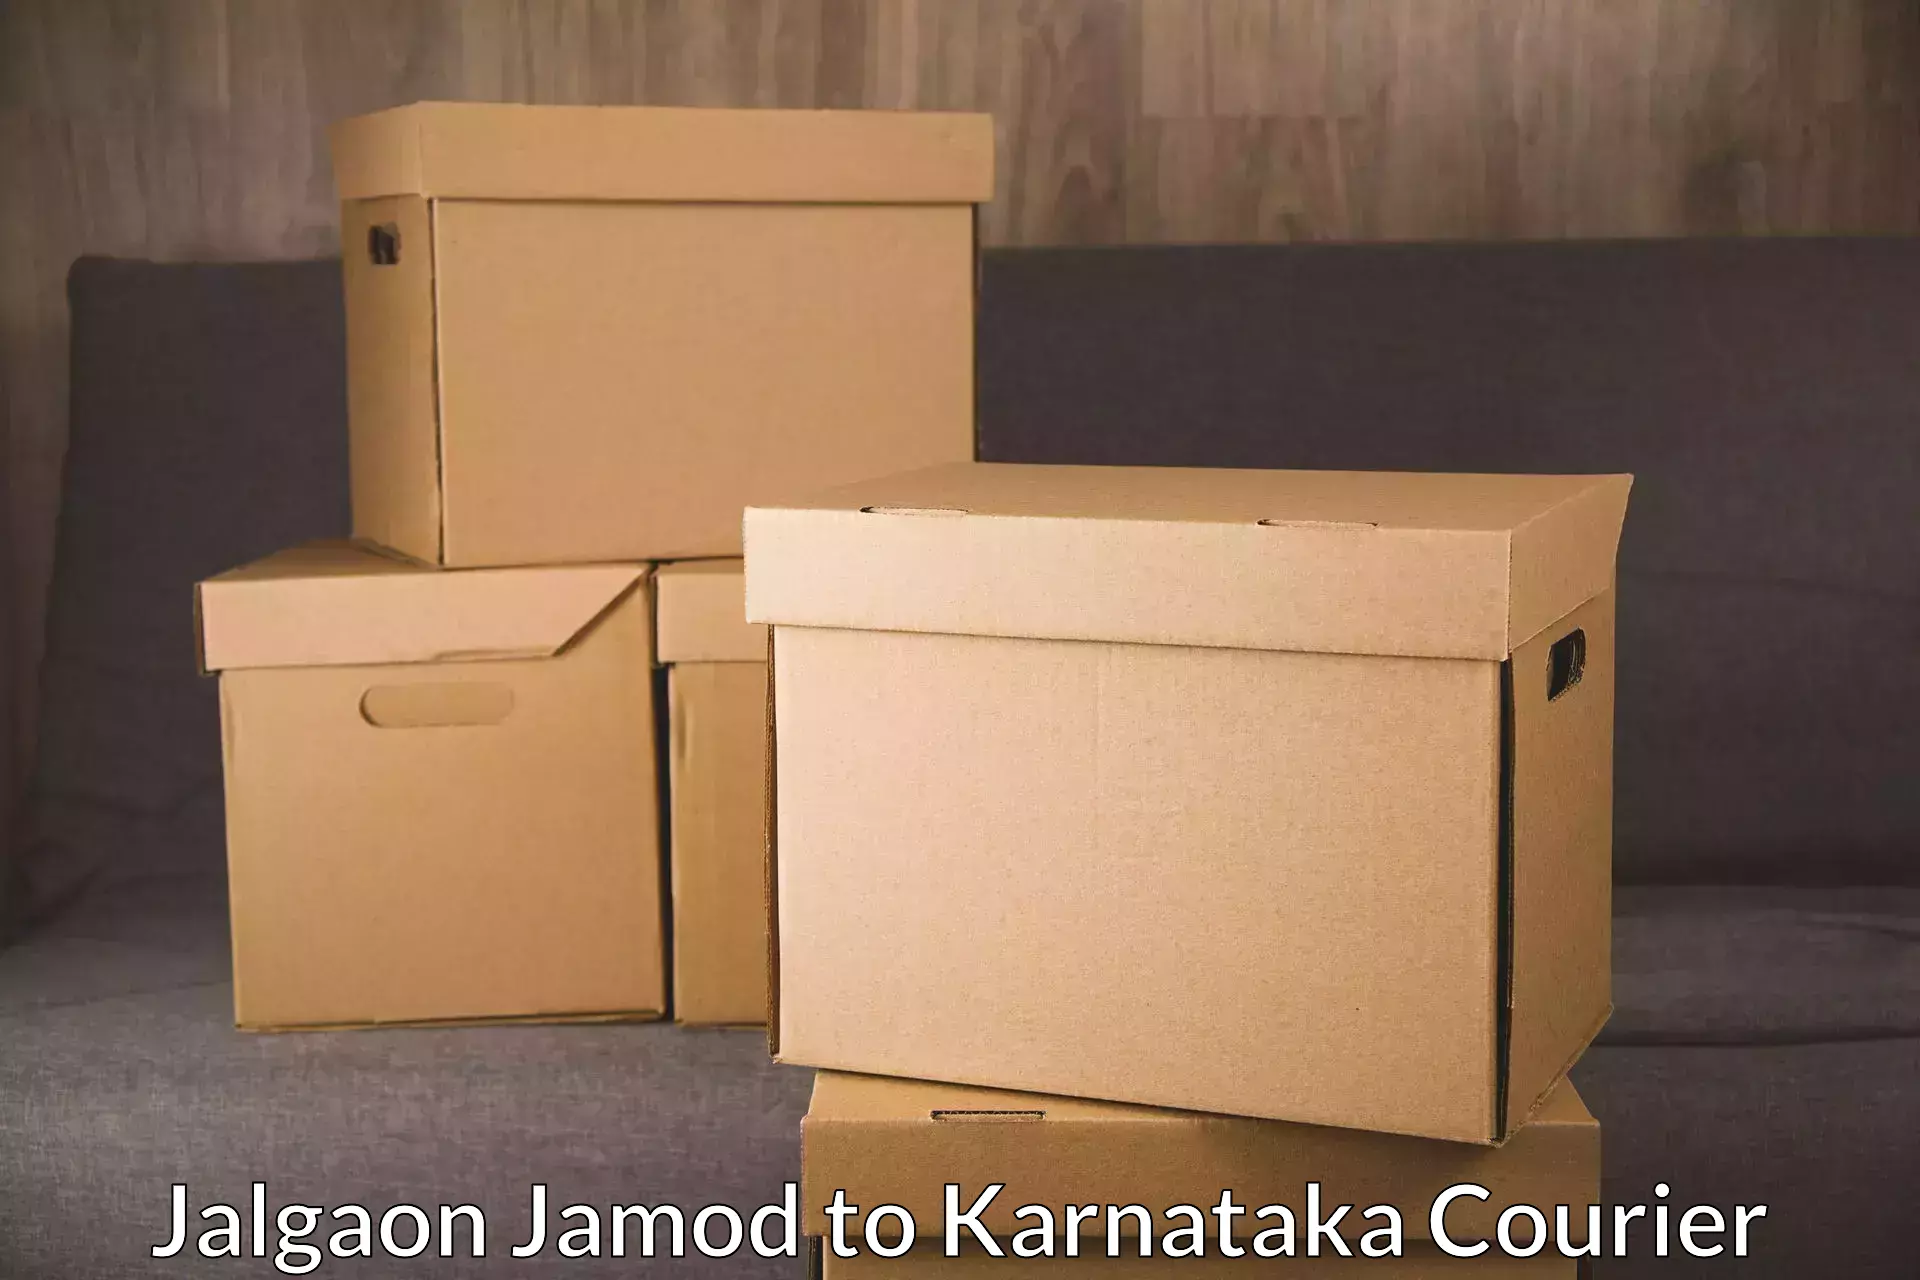 Subscription-based courier Jalgaon Jamod to Ankola